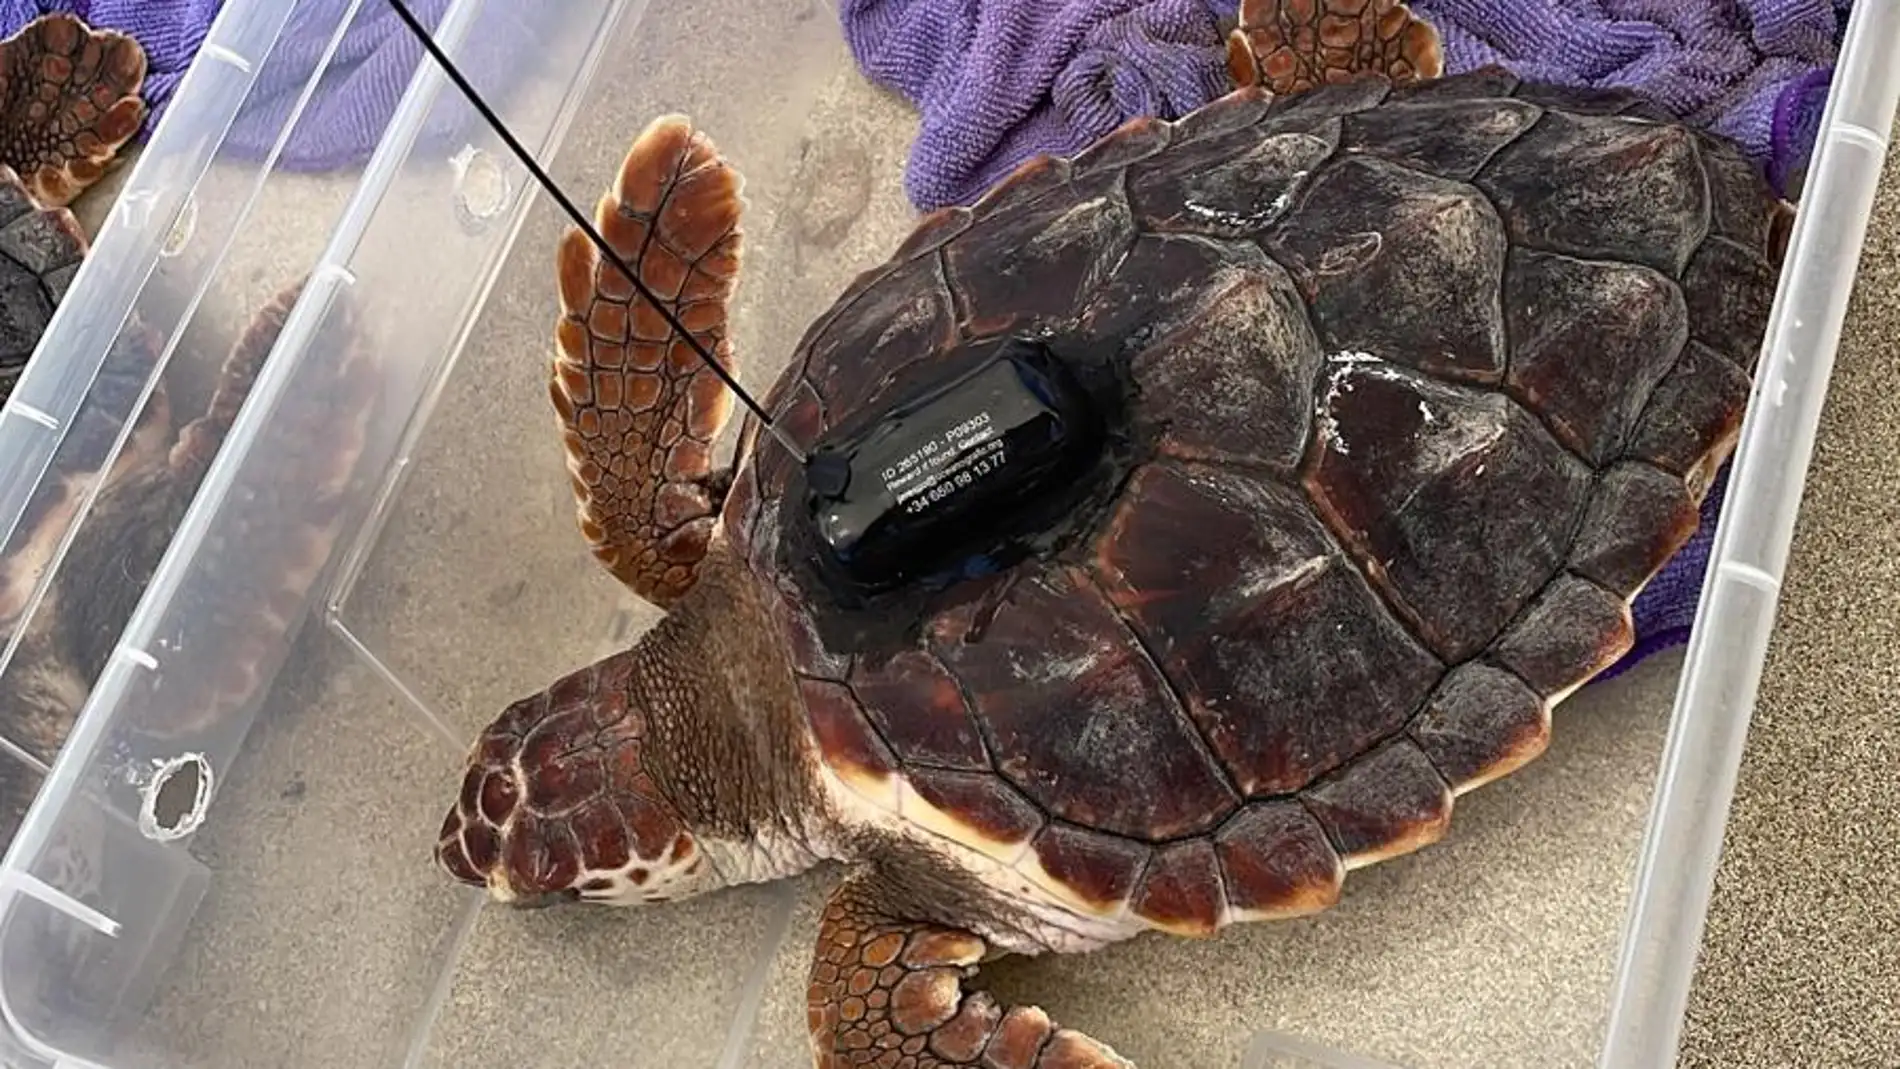 74 tortugas marinas ya disfrutan de su nueva vida en aguas del Mediterráneo tras ser liberadas en Sant Josep de sa Talaia 